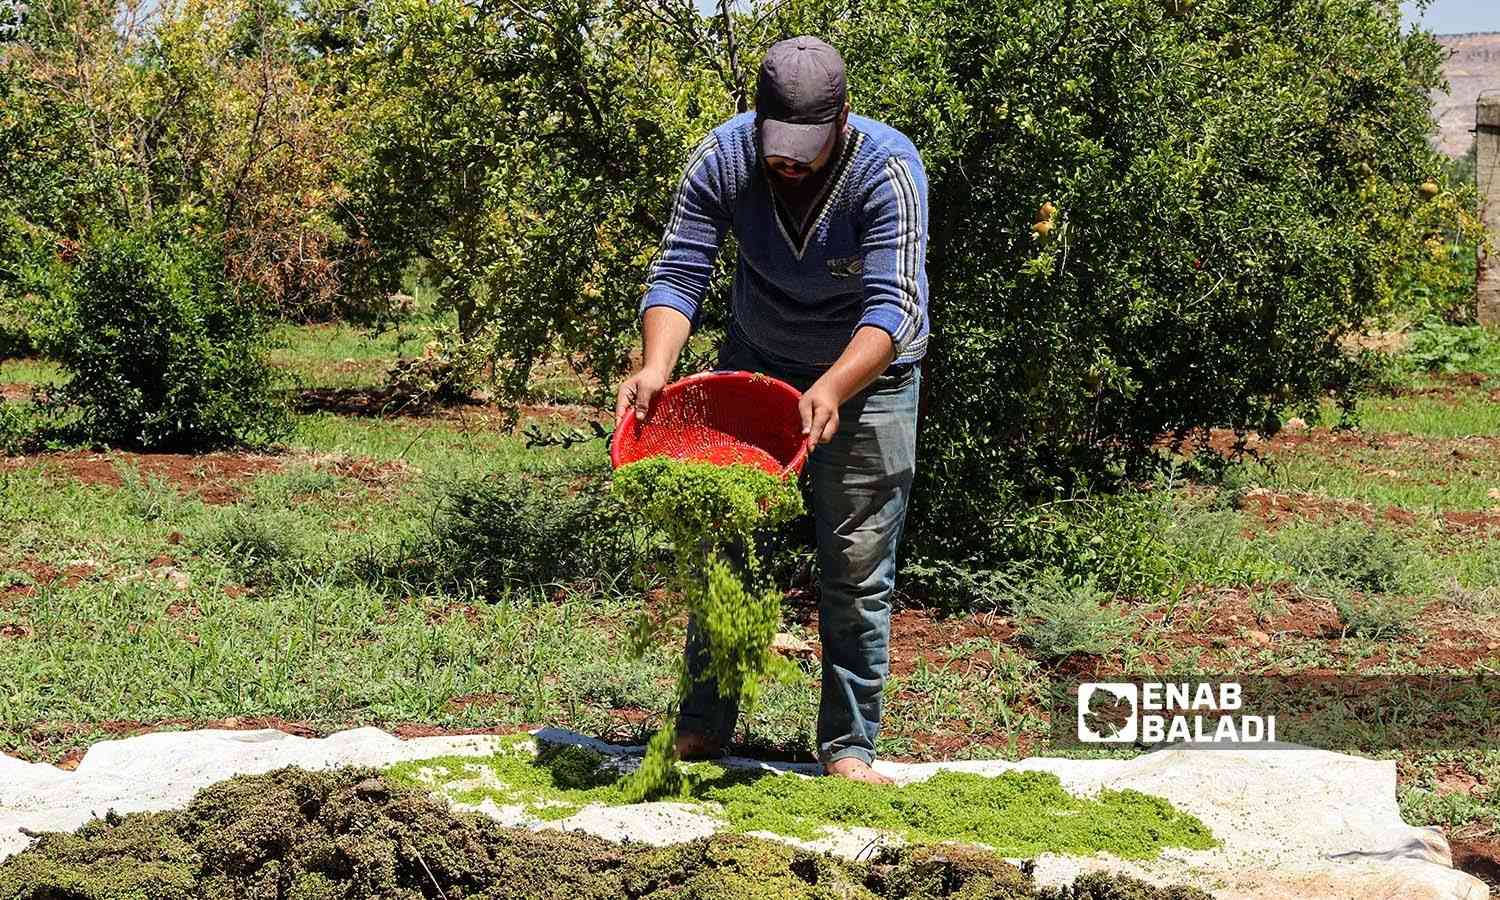 رجل يجفف نبات الازولا ويخزنه لفصل الشتاء ليستخدمه كعلف للدواجن  في منطقة عفرين بريف حلب الشمالي - 30 أيلول 2022 (عنب بلدي / أمير خربطلي)